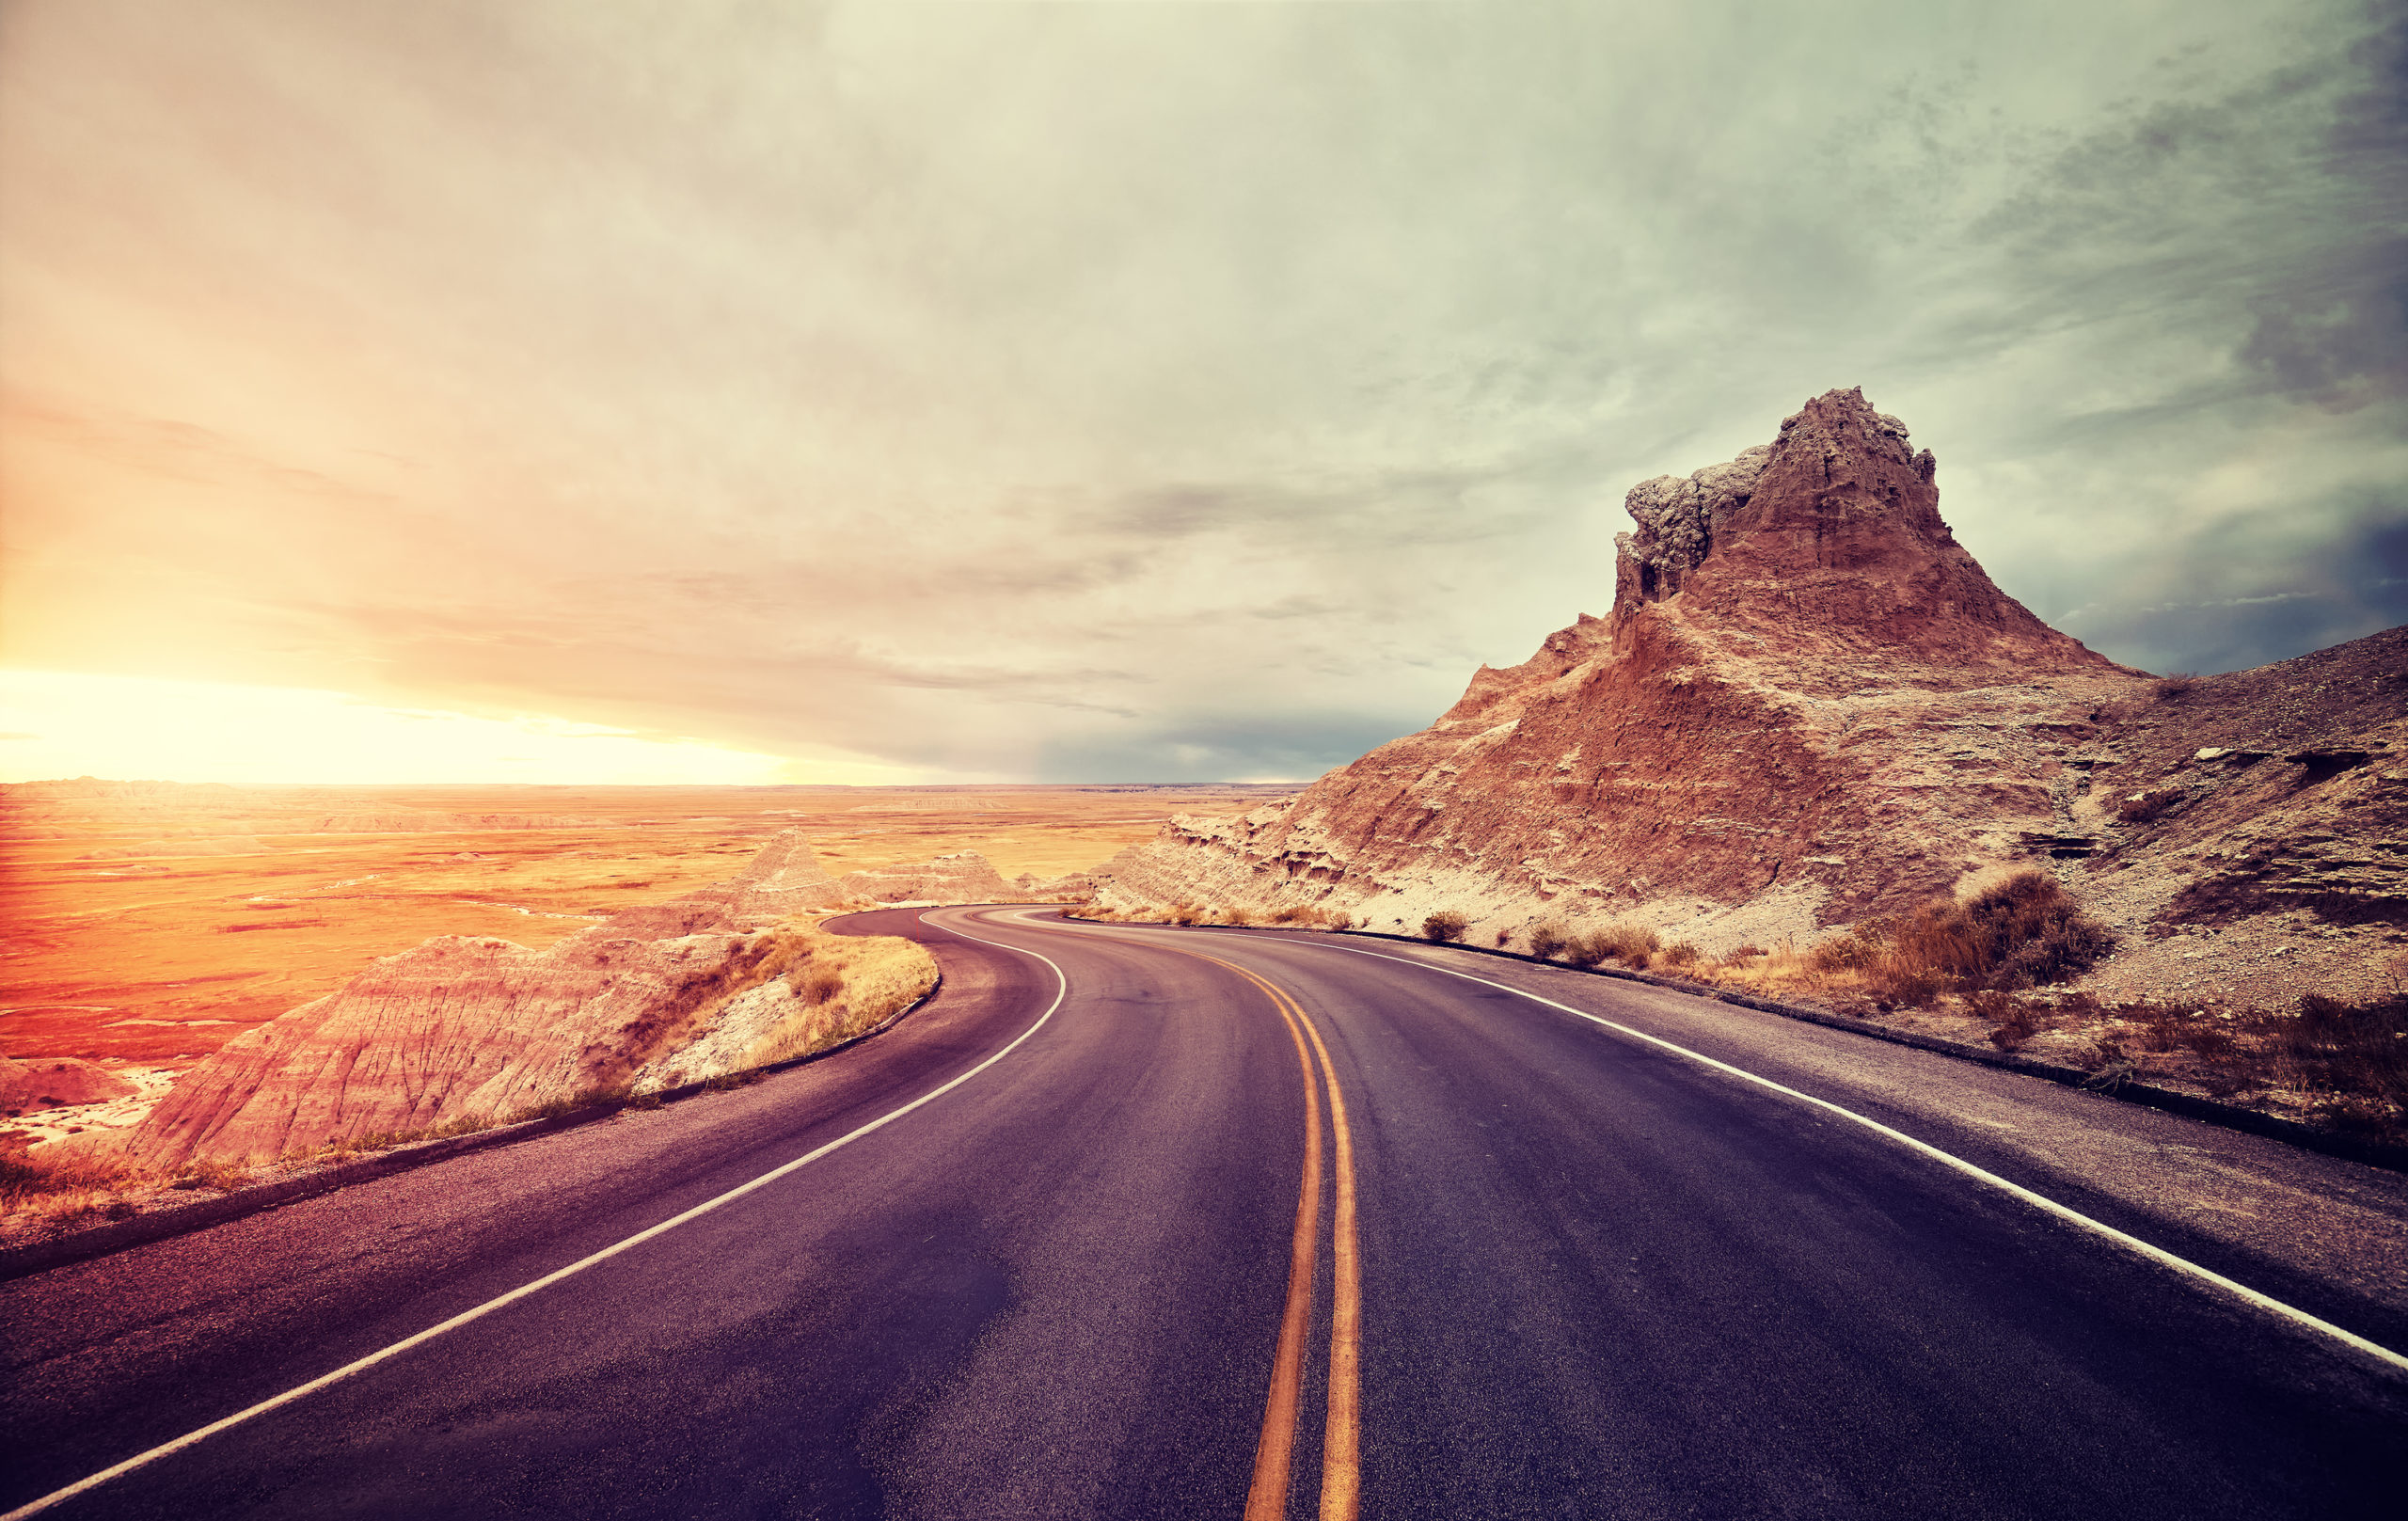 Scenic desert road at sunset, USA.